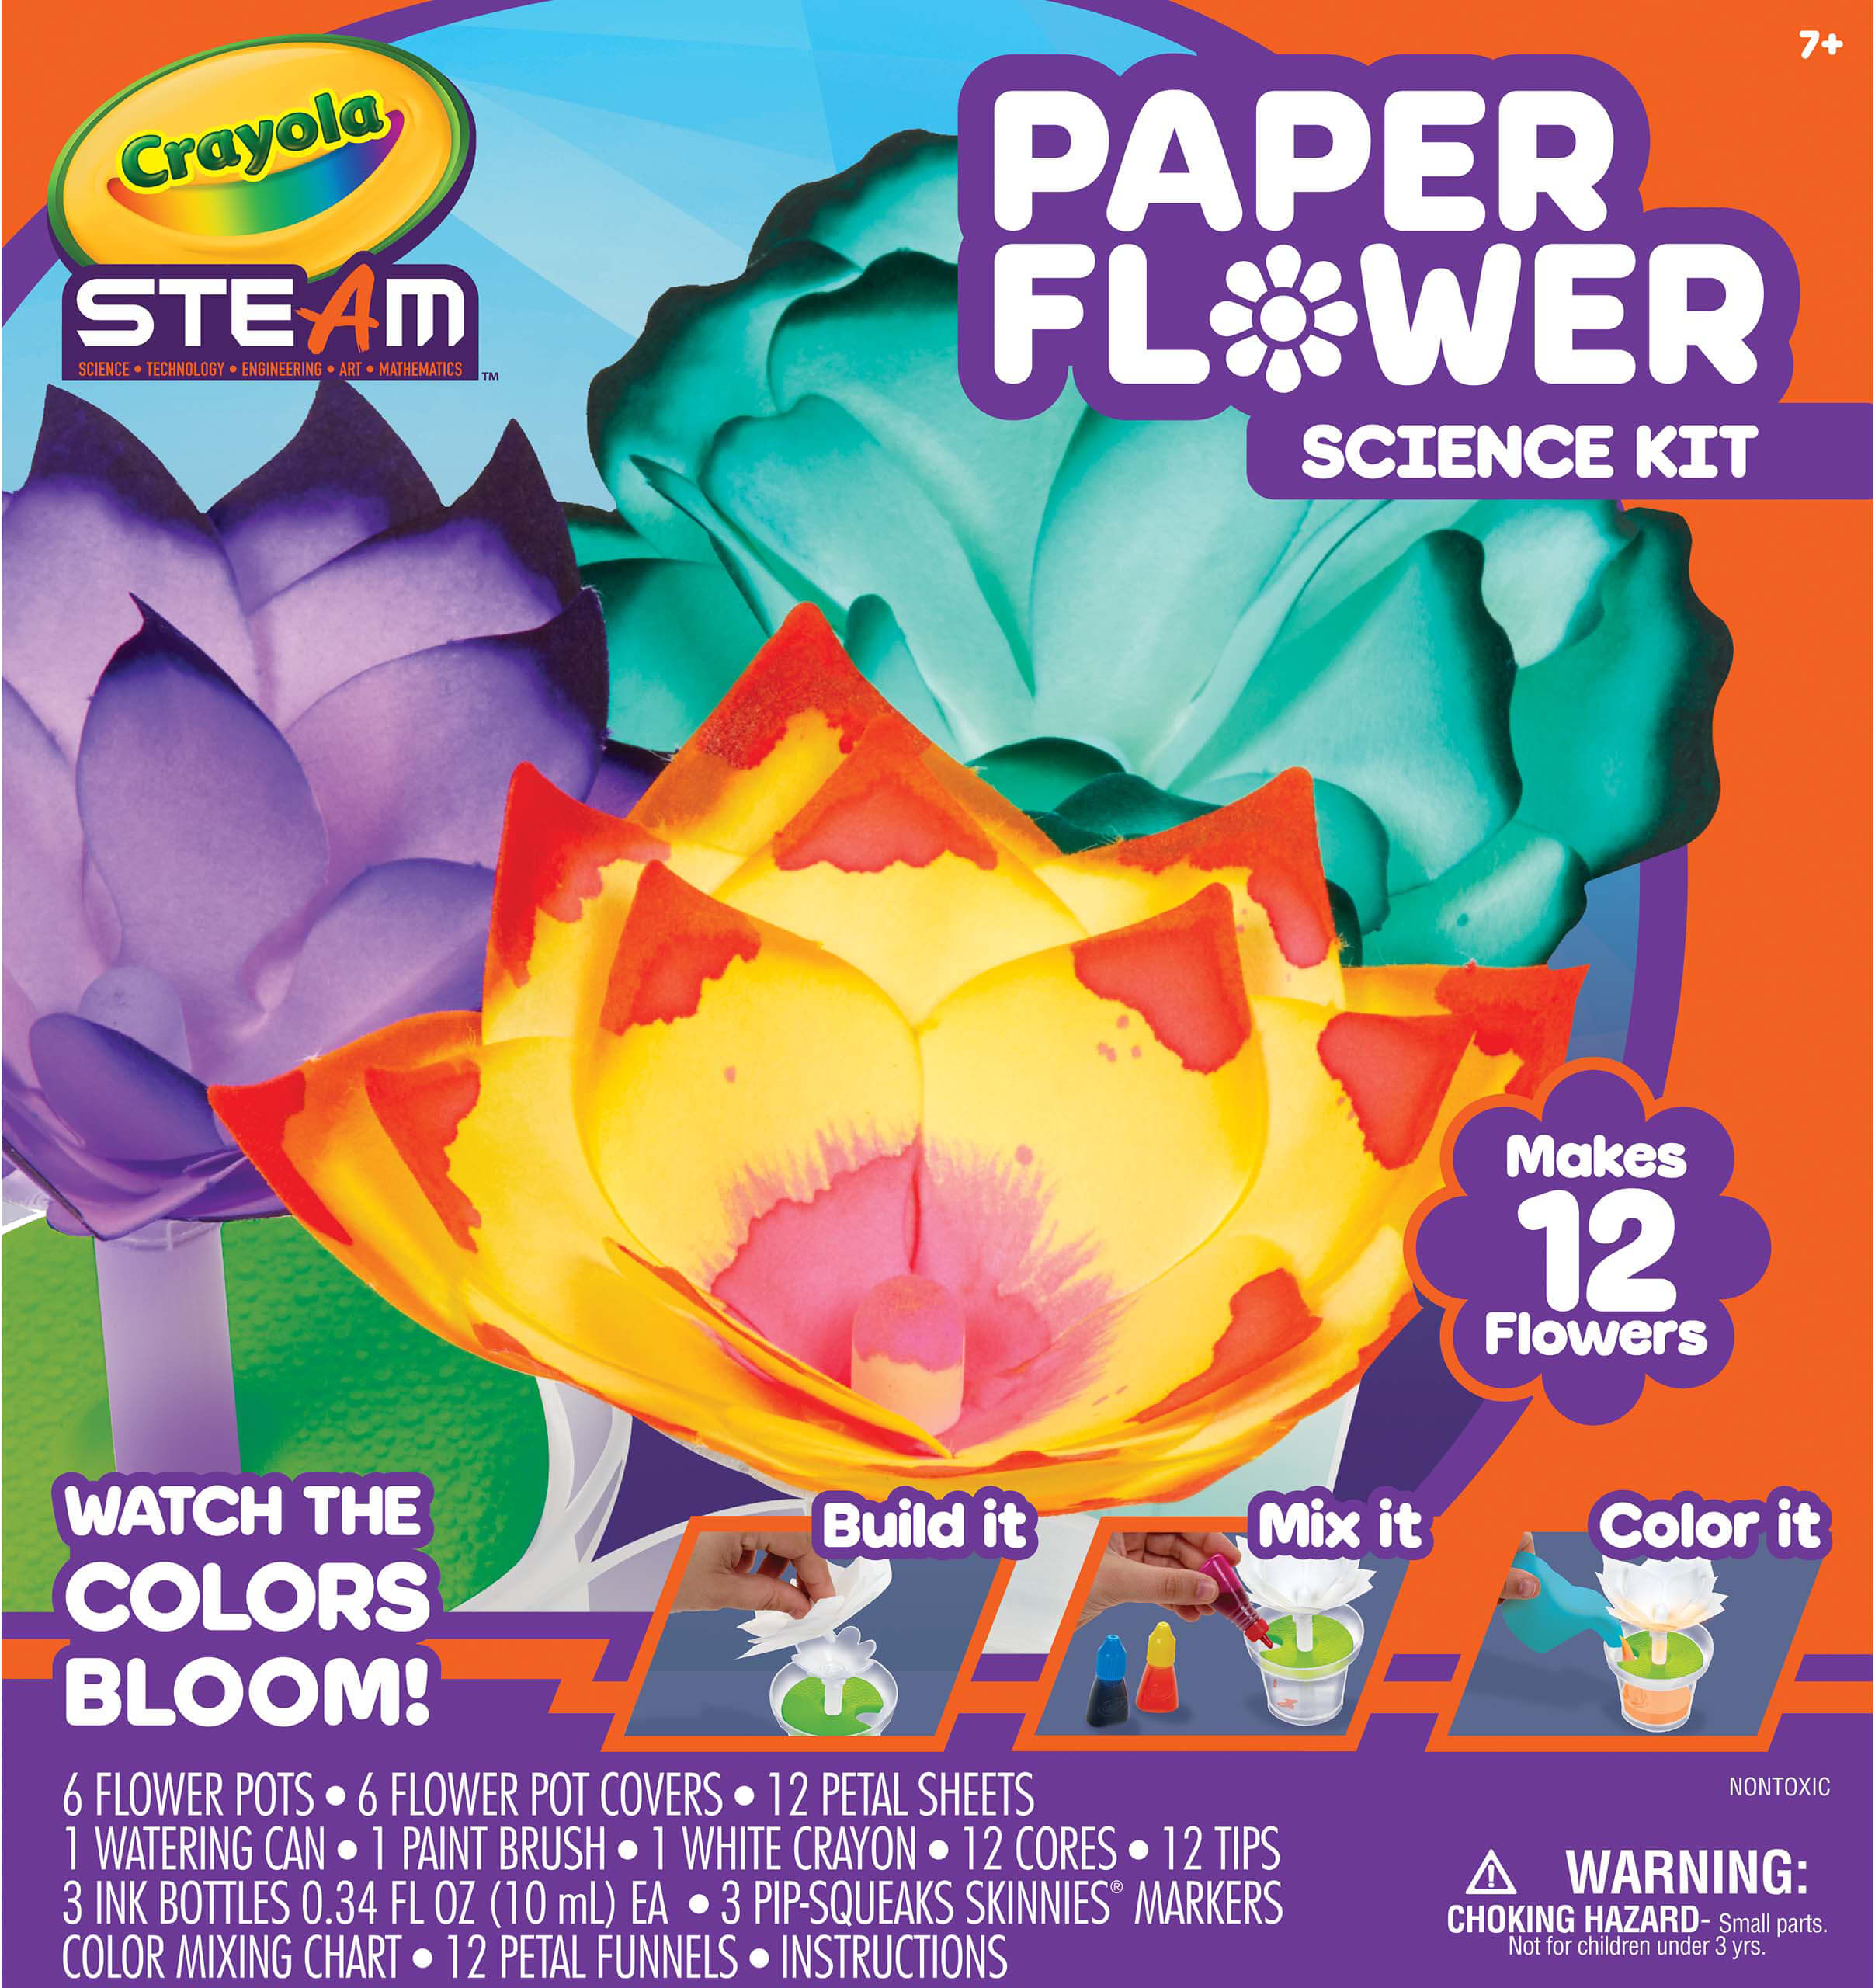 Crayola Steam Paper Flower Science Kit